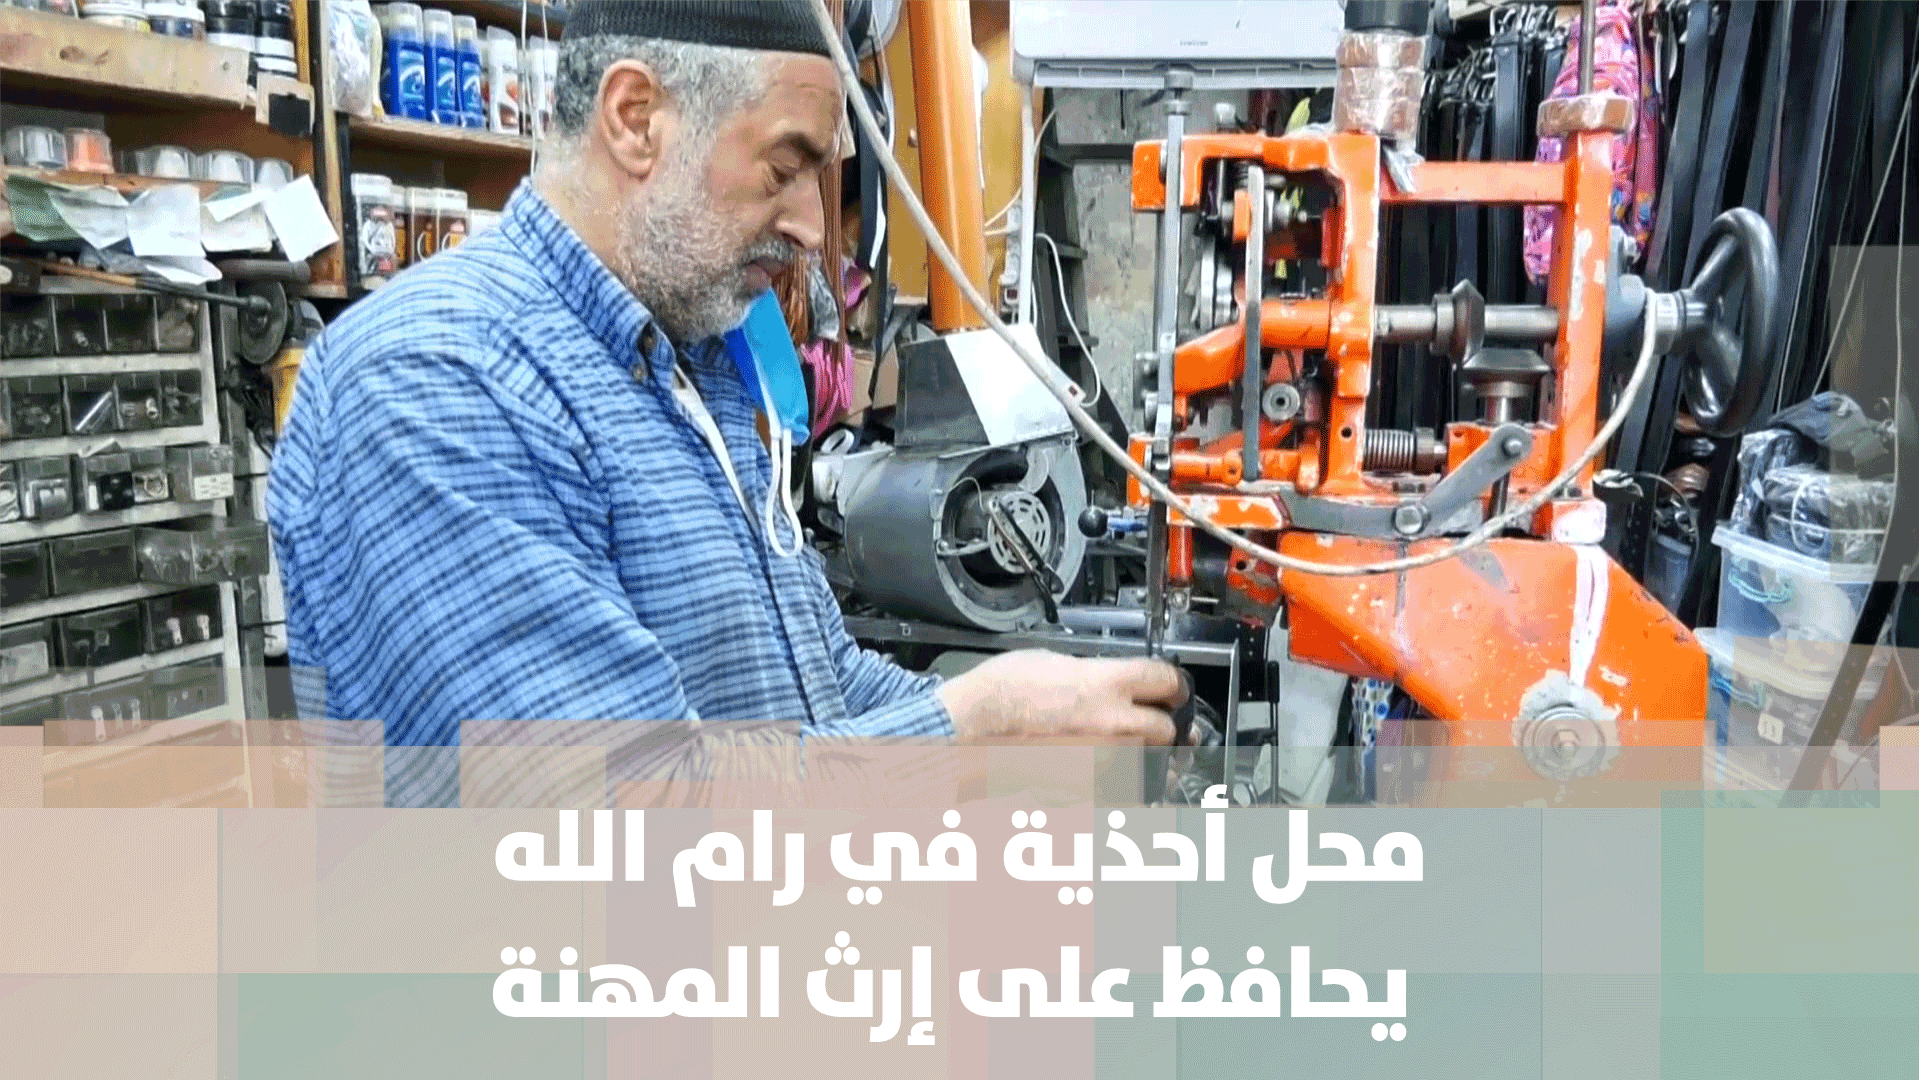 محل أحذية في رام الله يحافظ على إرث المهنة - فيديو